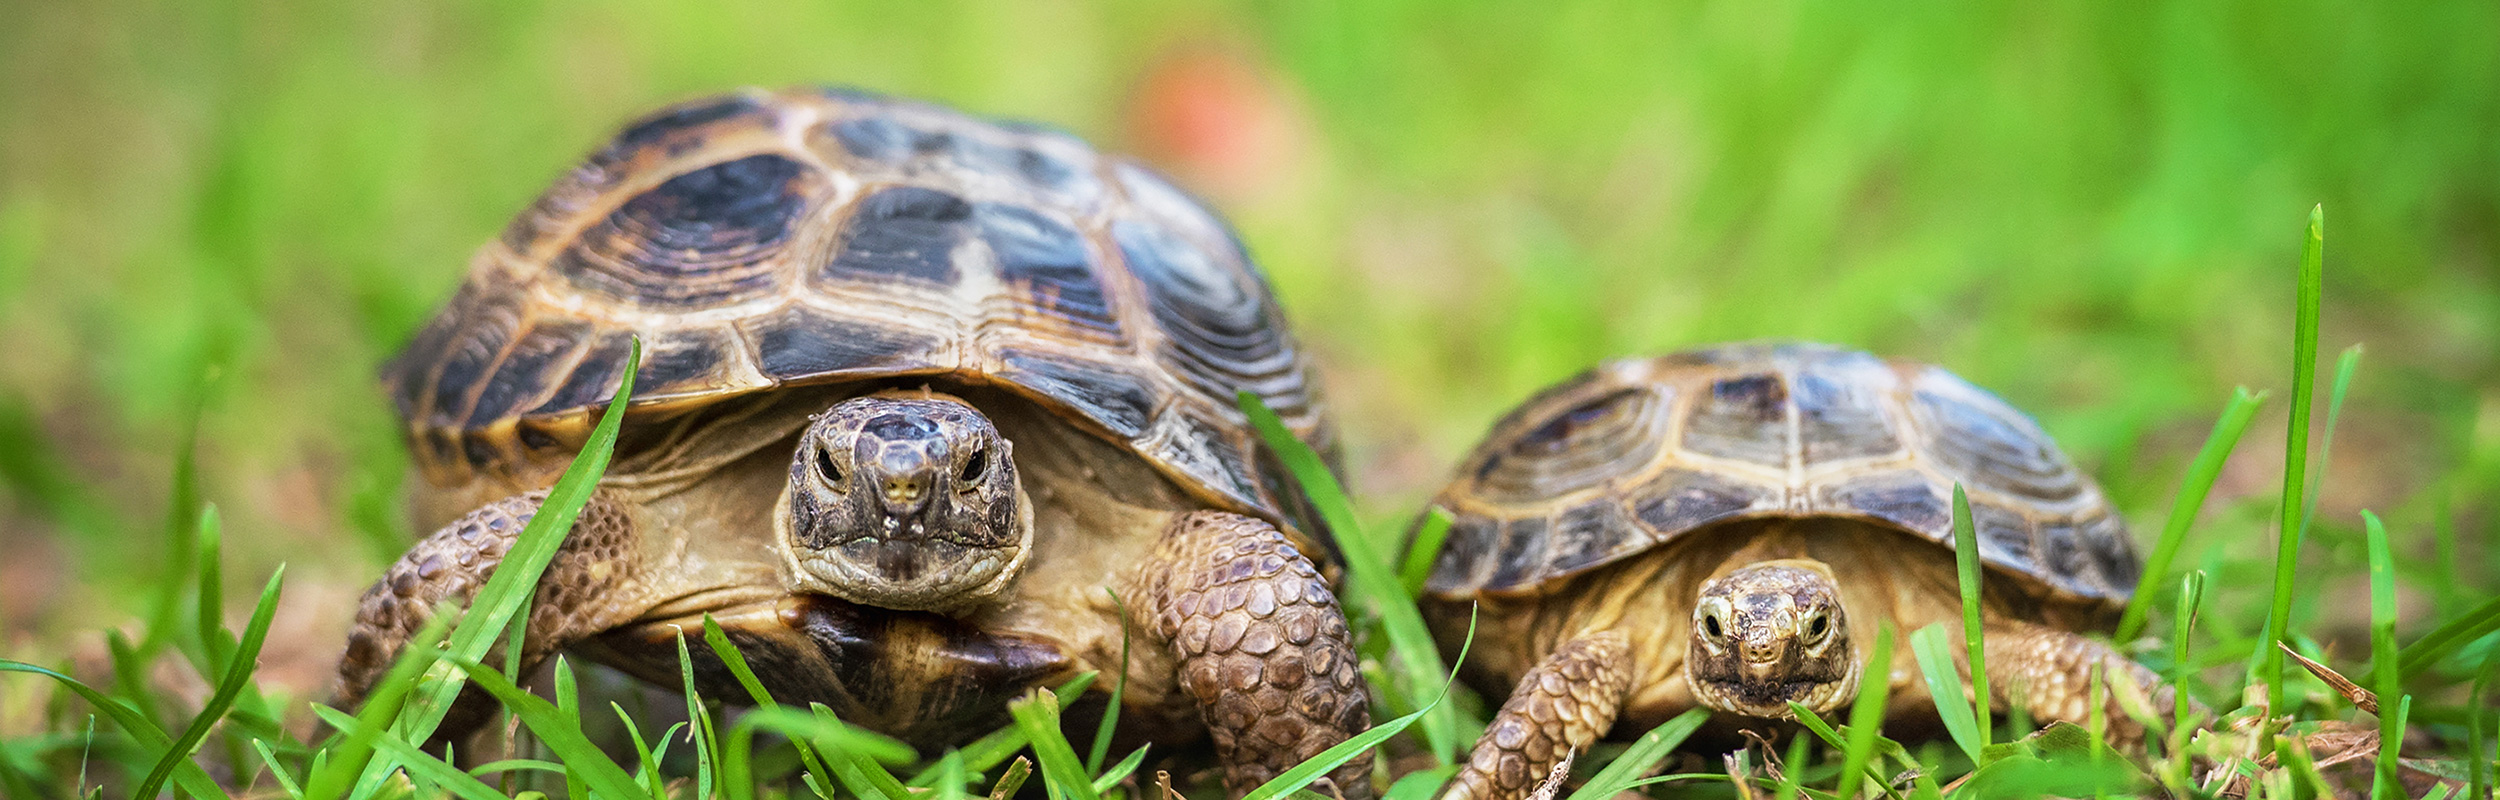 Schildkröten auf Rasen im Garten